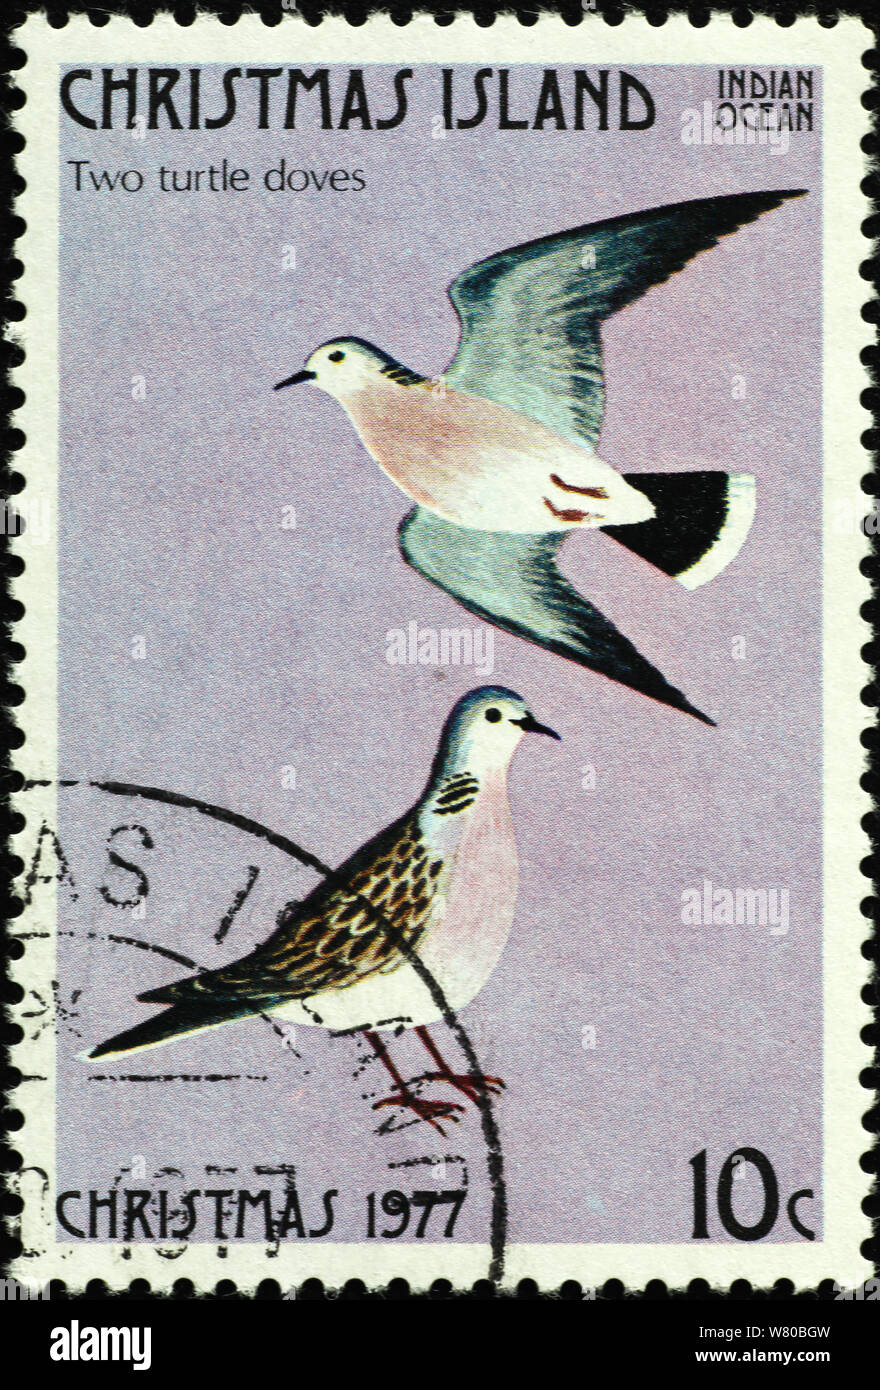 Dodici giorni di Natale - 2 tortore sul francobollo di Isola di Natale Foto Stock